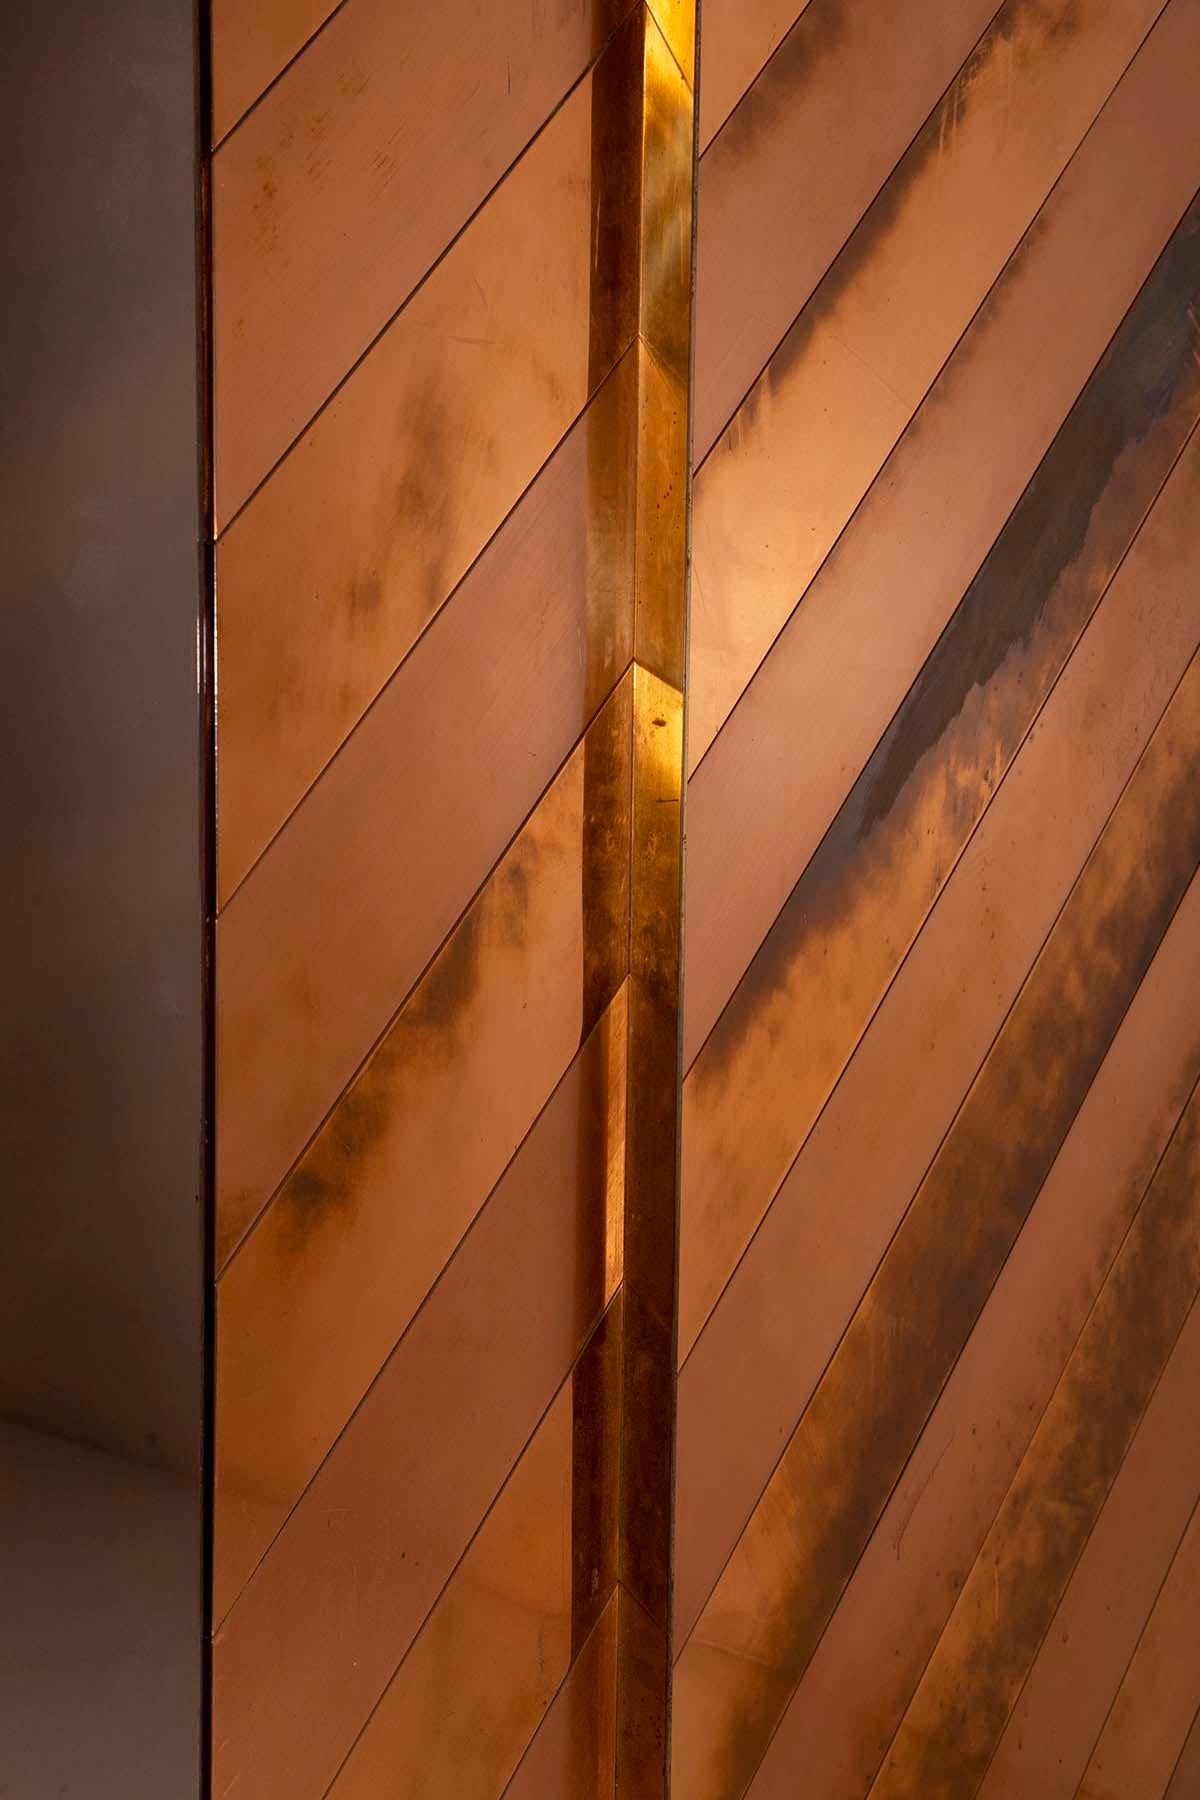 Sandro Petti Rare Entrance Furniture in brass and copper In Good Condition For Sale In Milano, IT